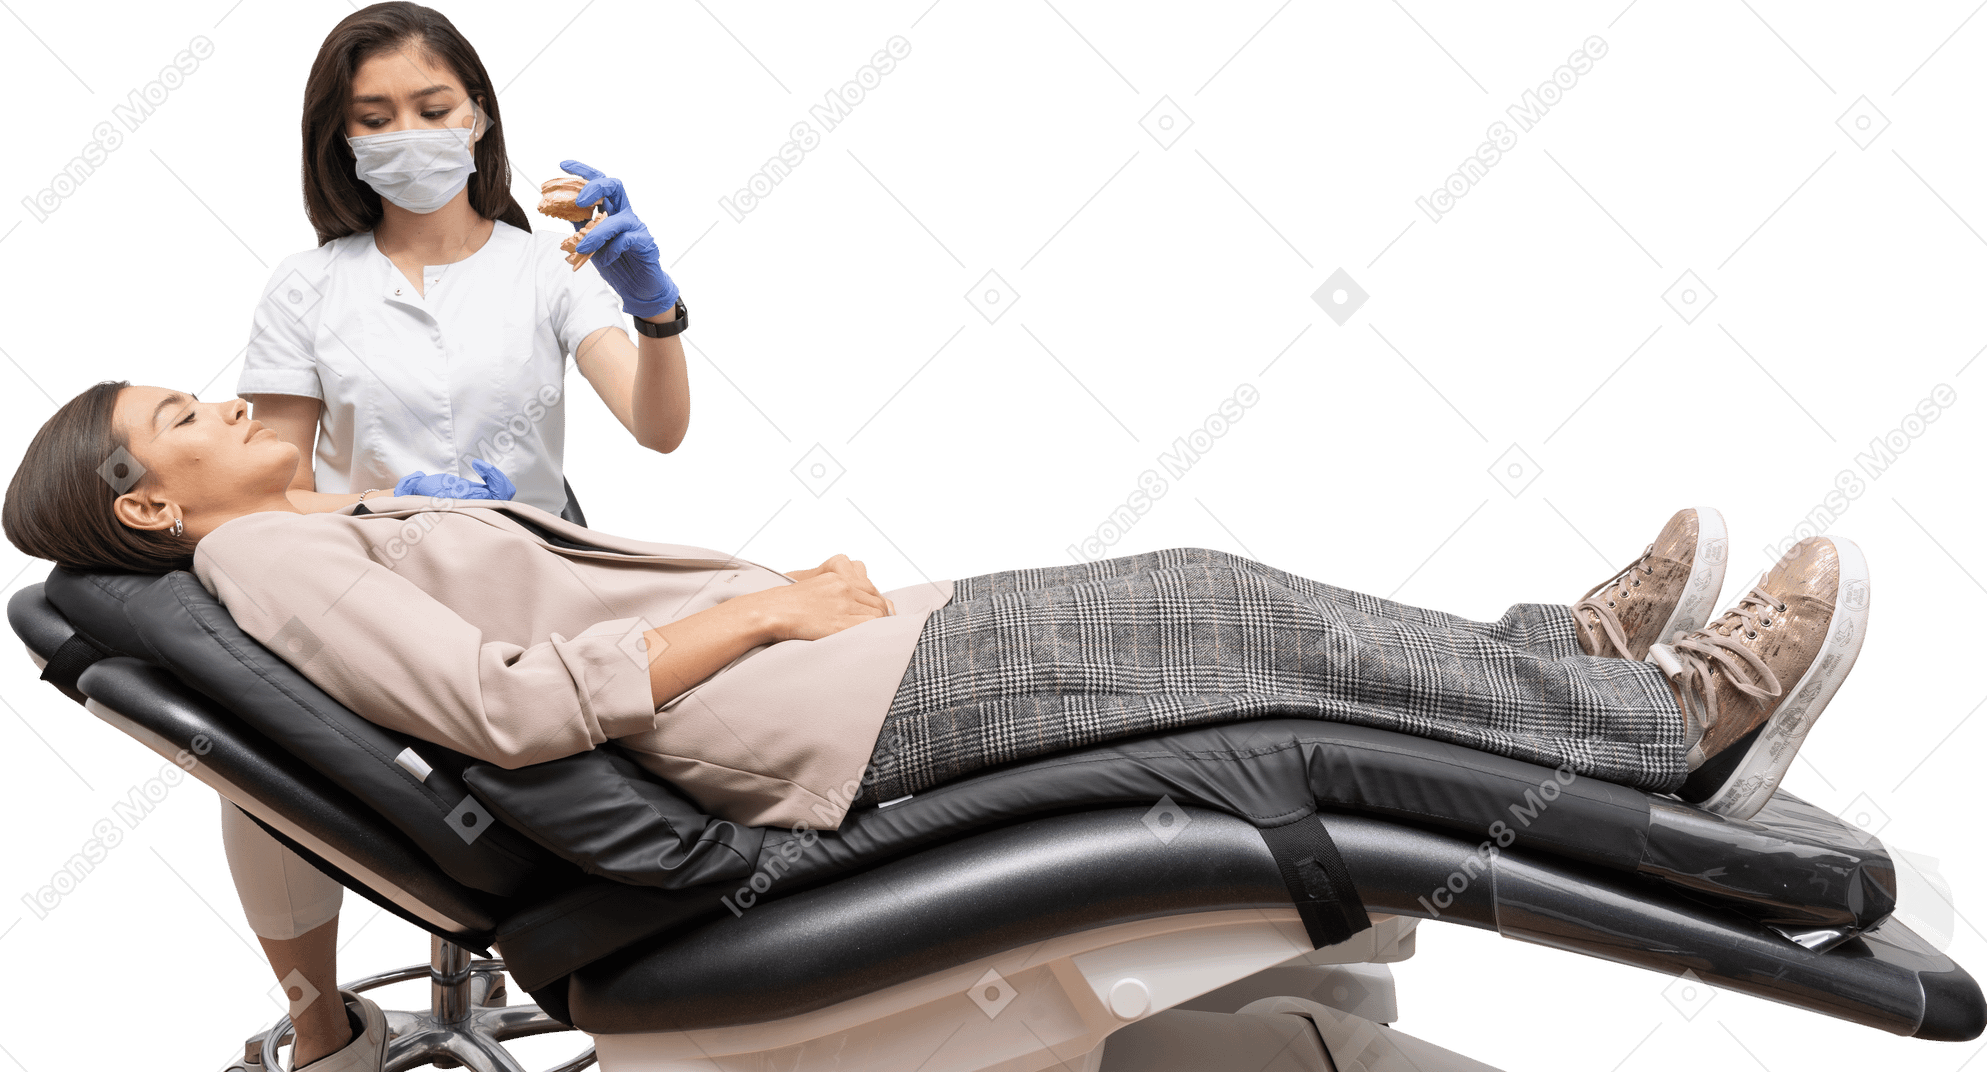 女性患者に歯のプロトタイプを示す女性歯科医の全身像